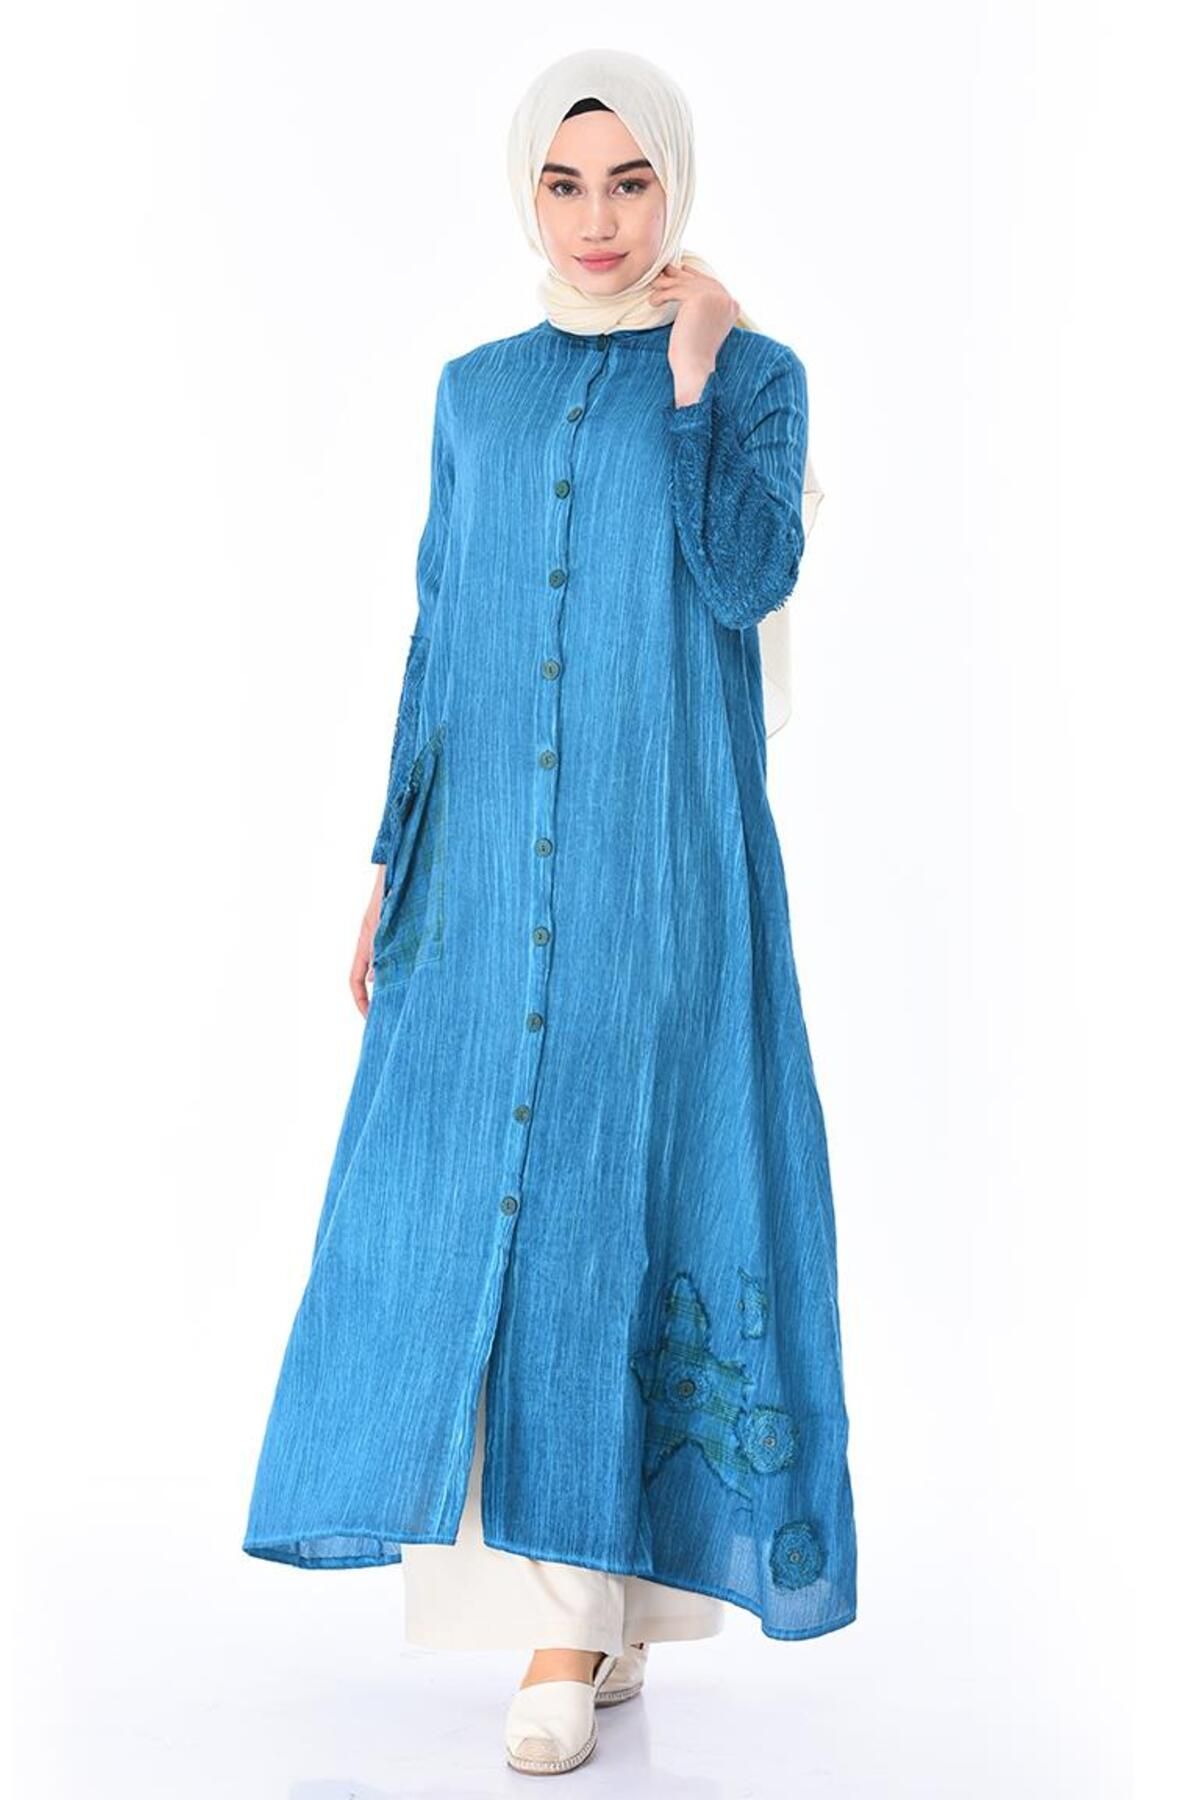 Eliş Şile Bezi لباس آستین بلند شیله پارچه زمردی سایز پلاس دکمه دار فیروزه ای Trkz